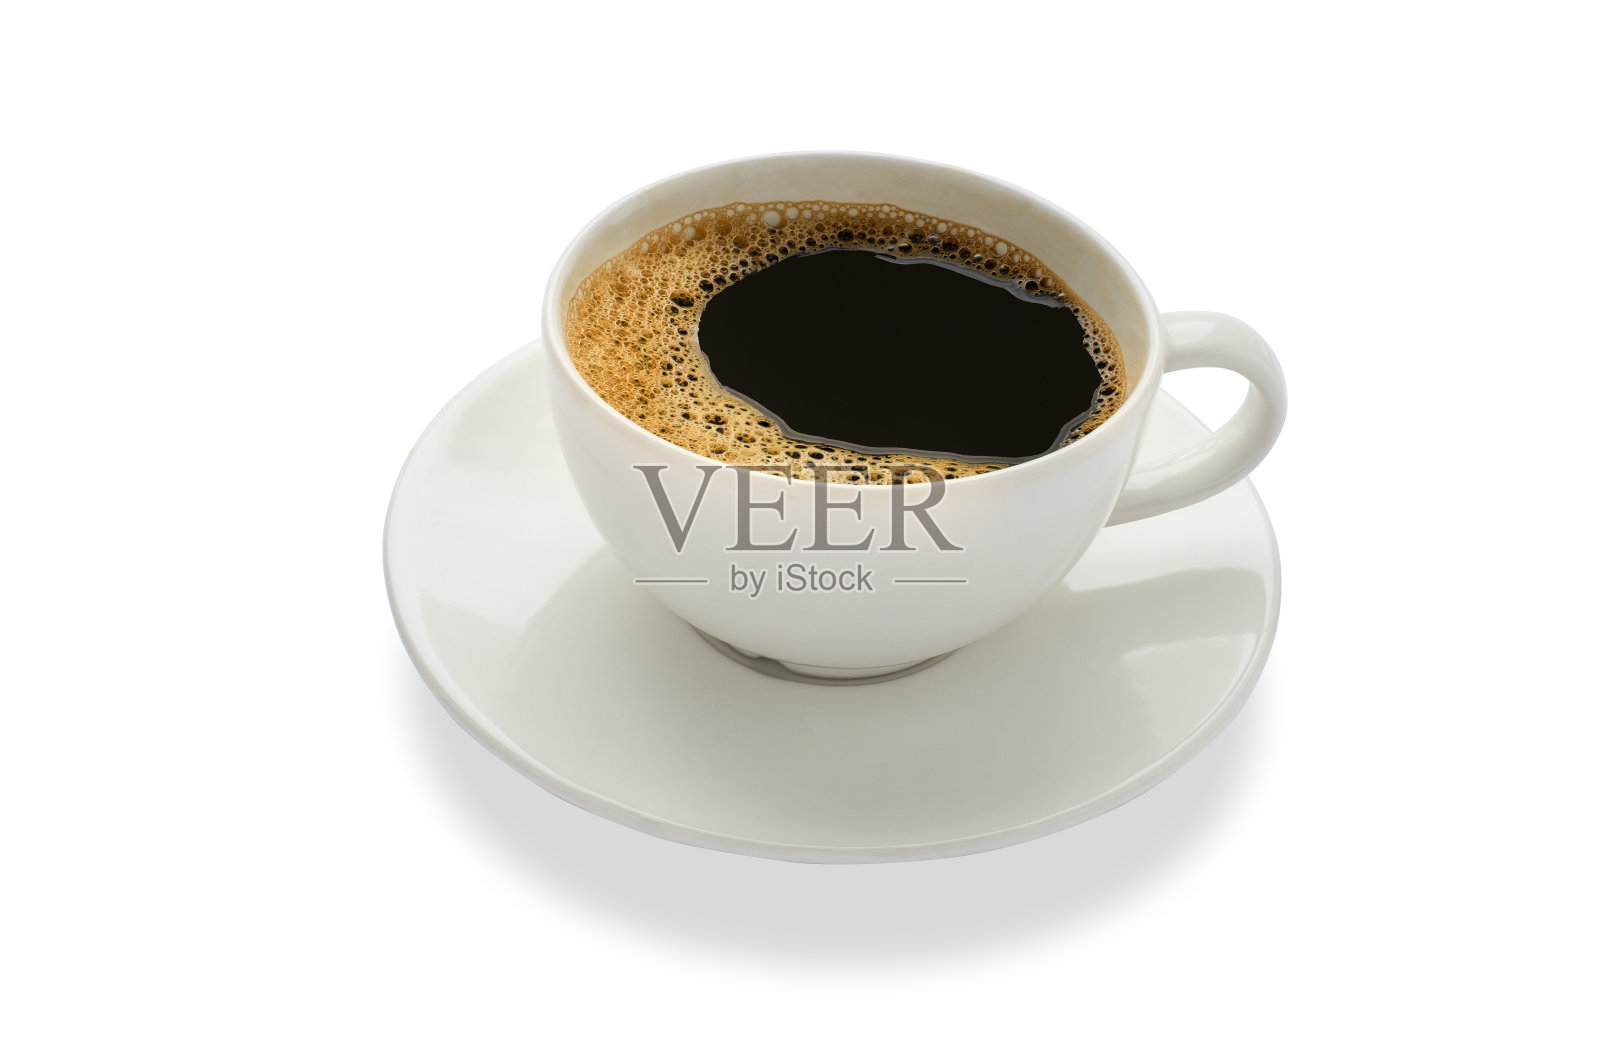 热新鲜的黑咖啡与牛奶泡沫的早餐菜单在白色陶瓷杯与白色盘子孤立在白色背景与剪切路径。平躺照片摄影图片